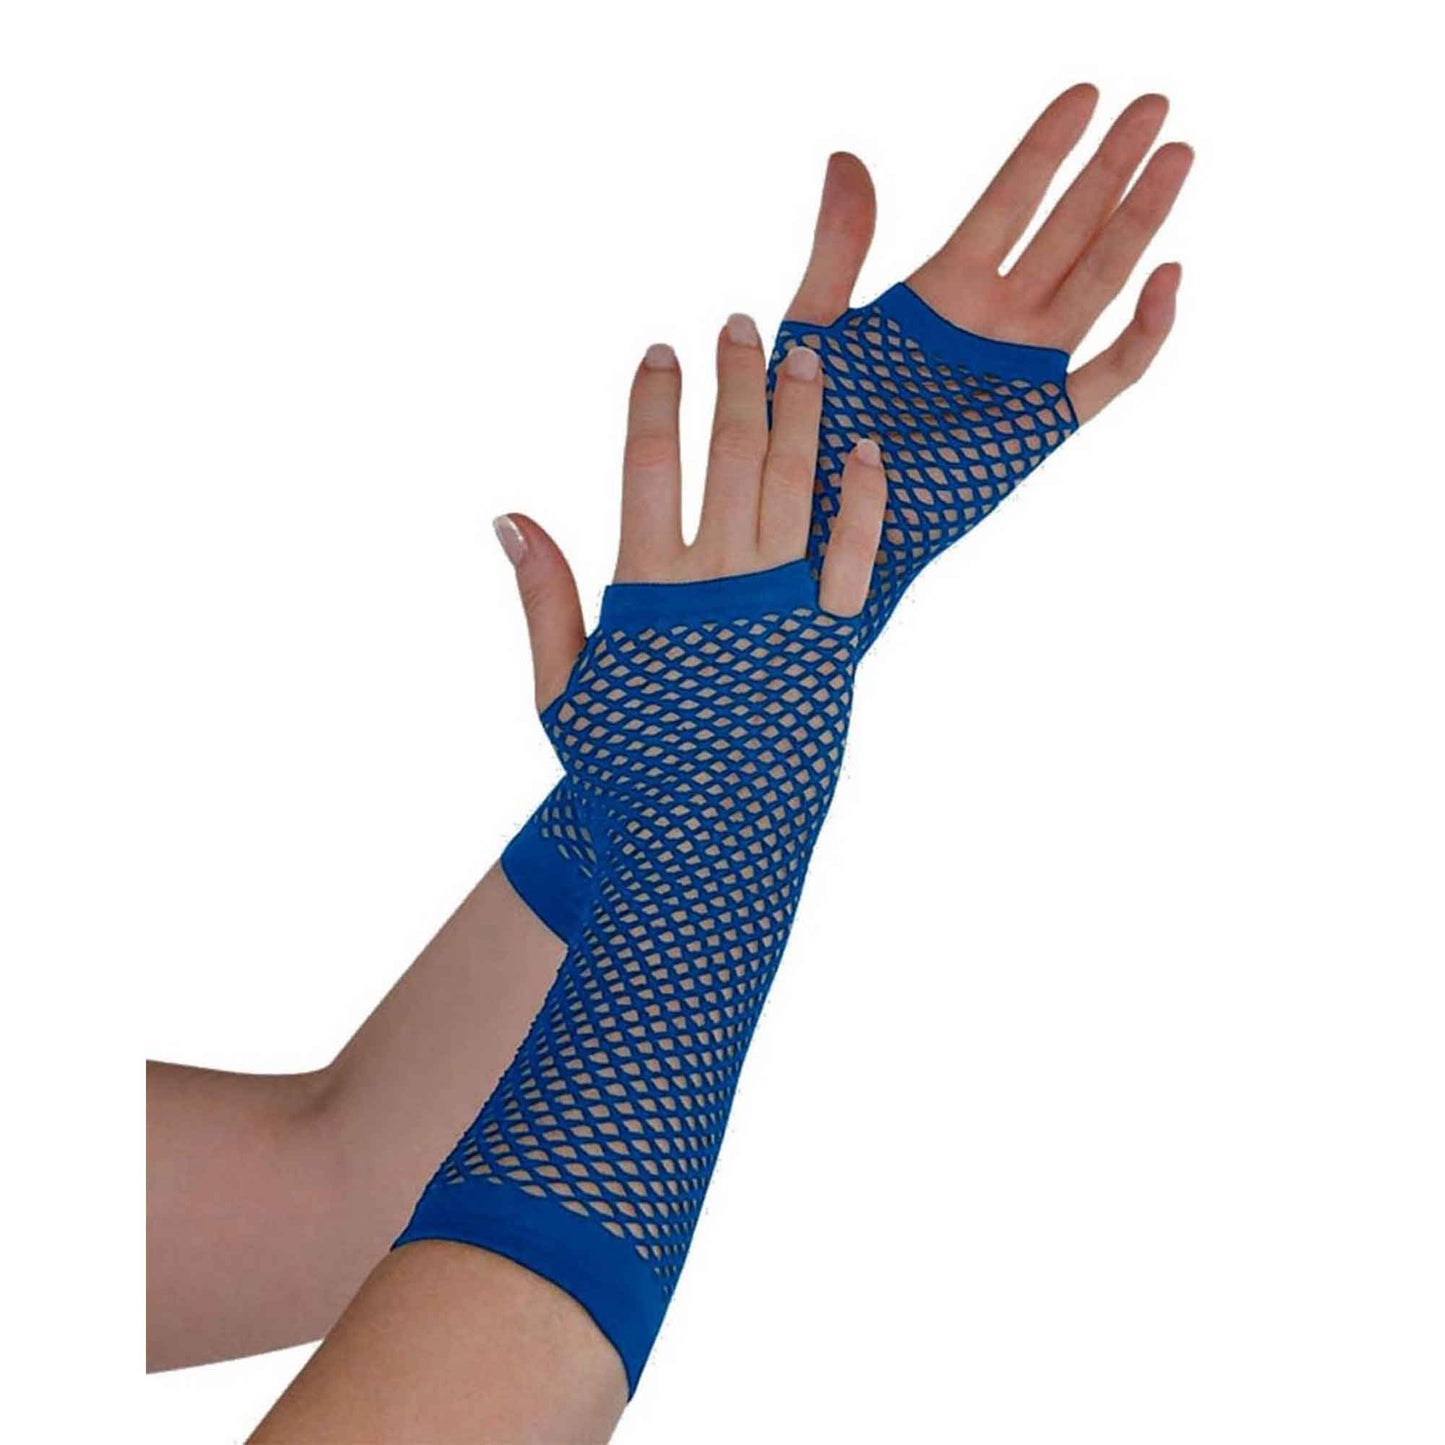 Fishnet Gloves Long - Navy